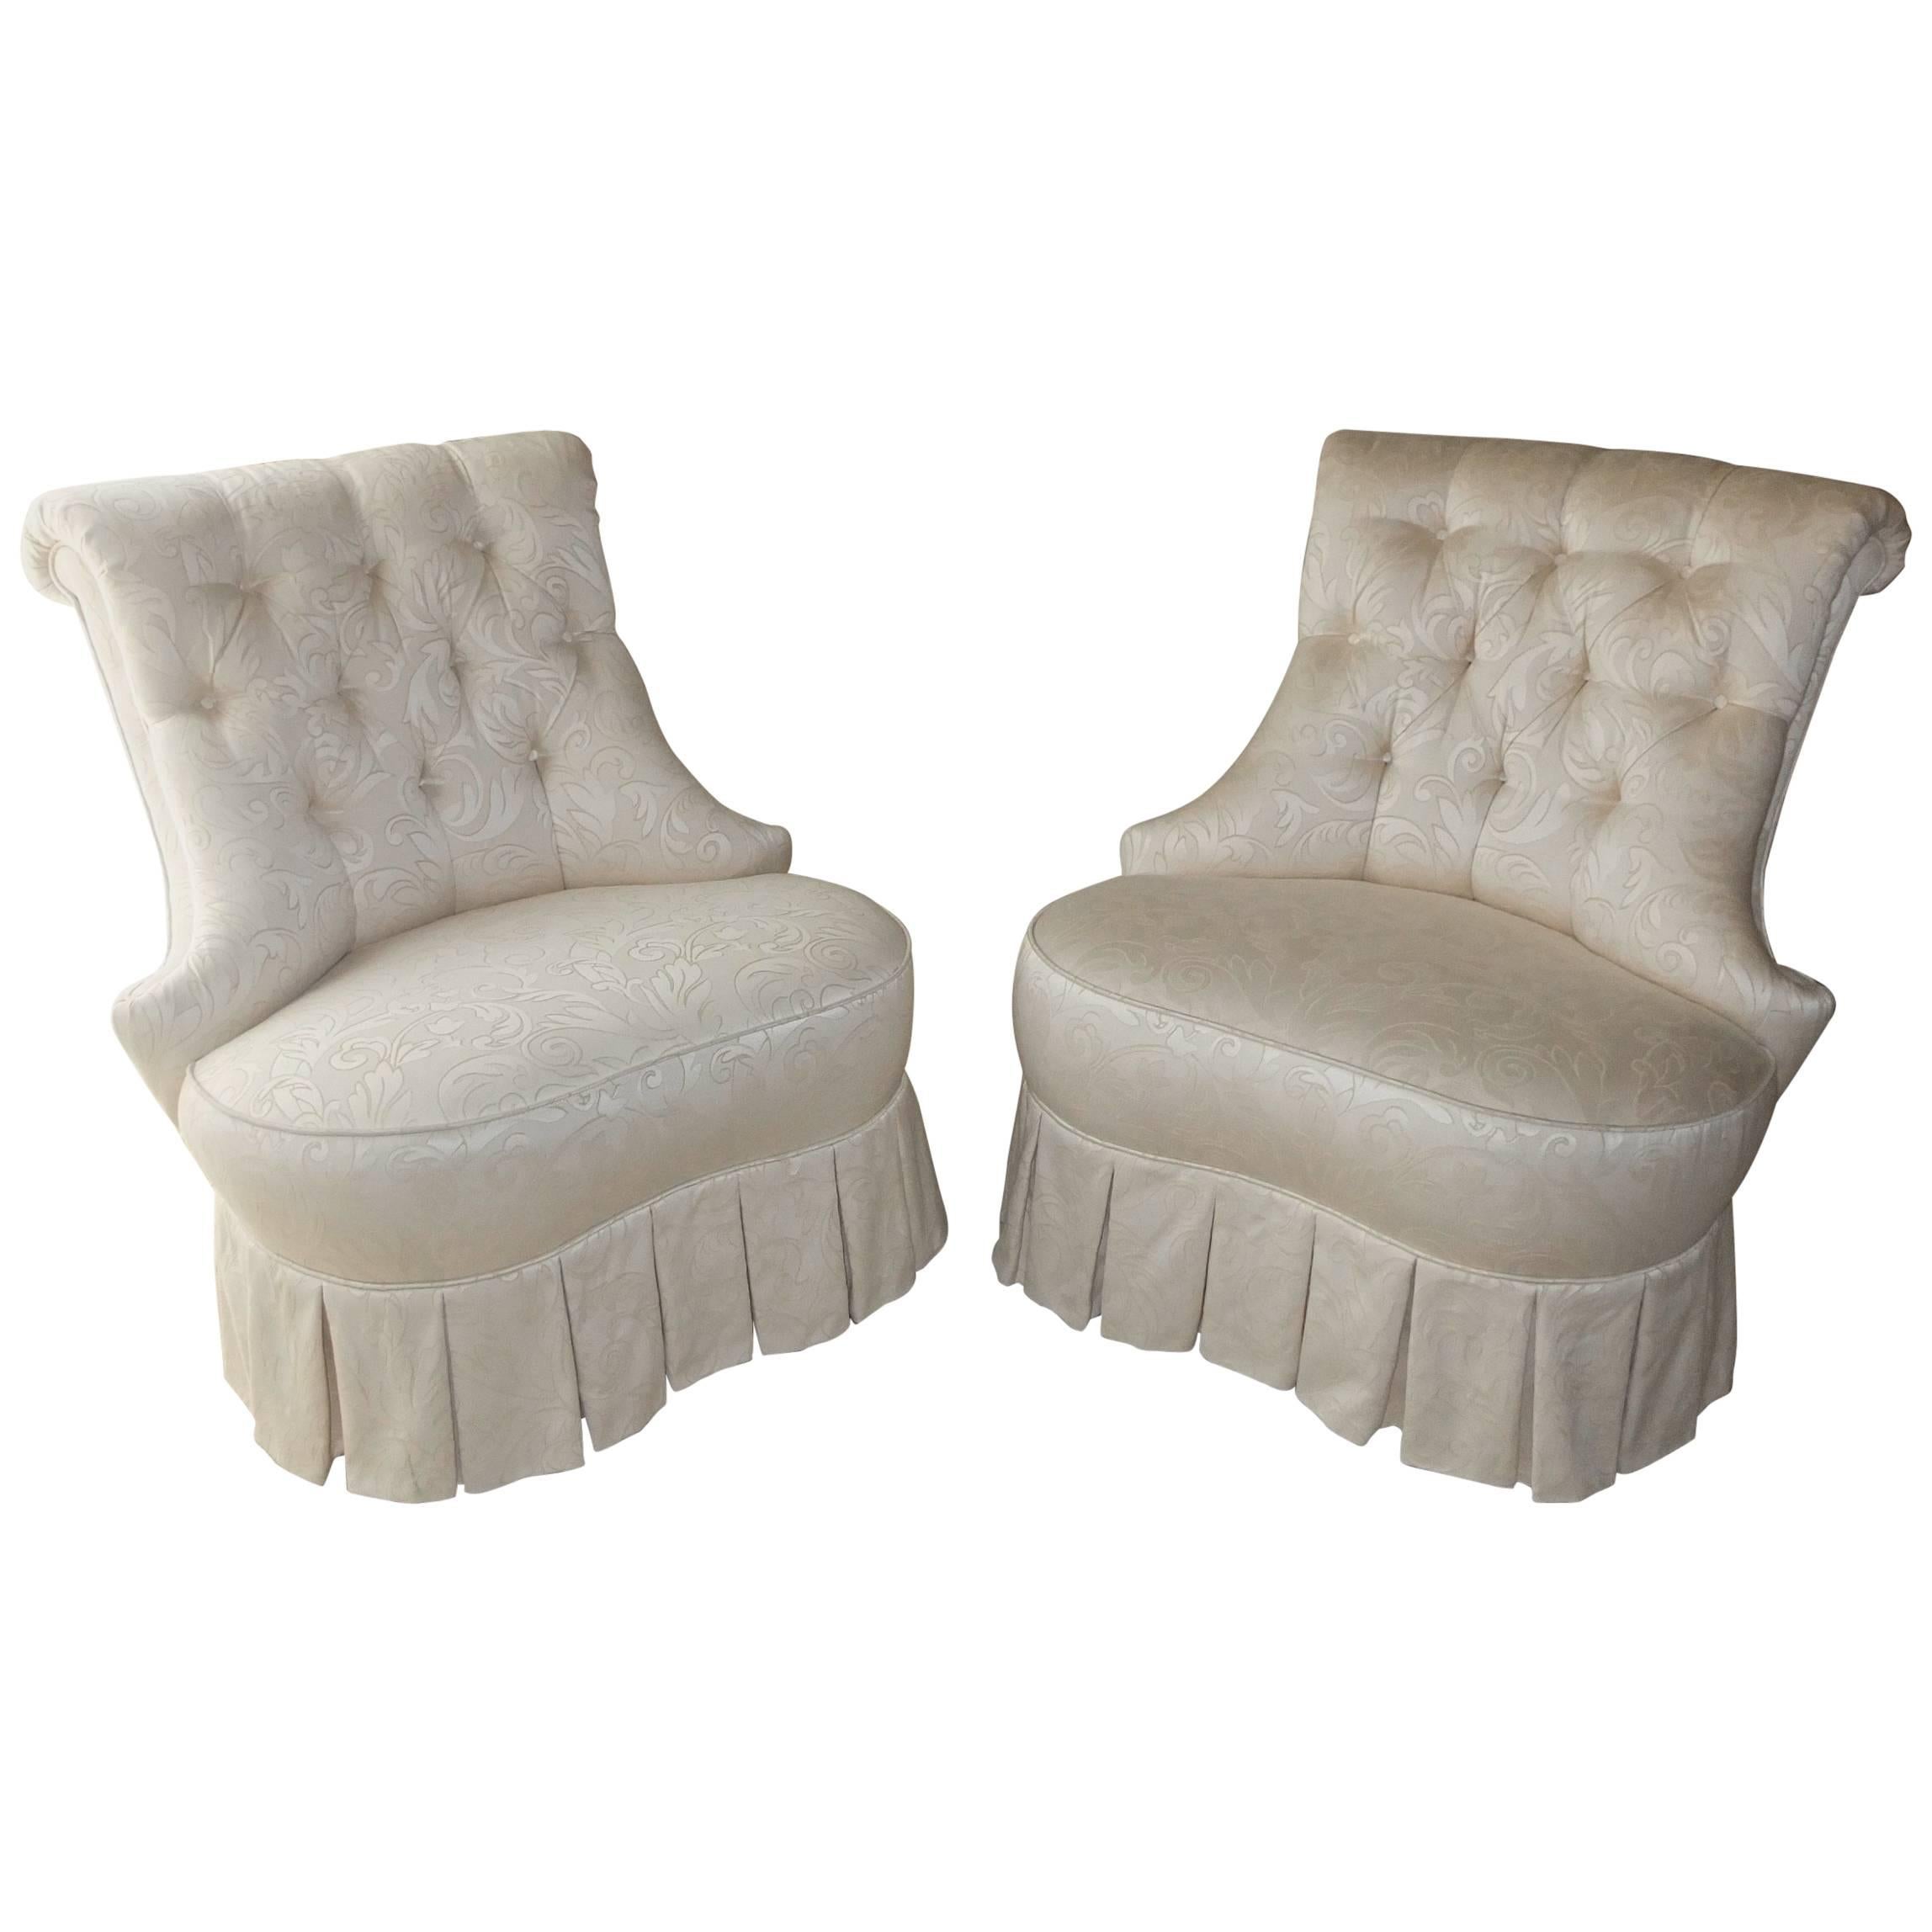 Pair of Napoleon III Style Boudoir Slipper Chairs